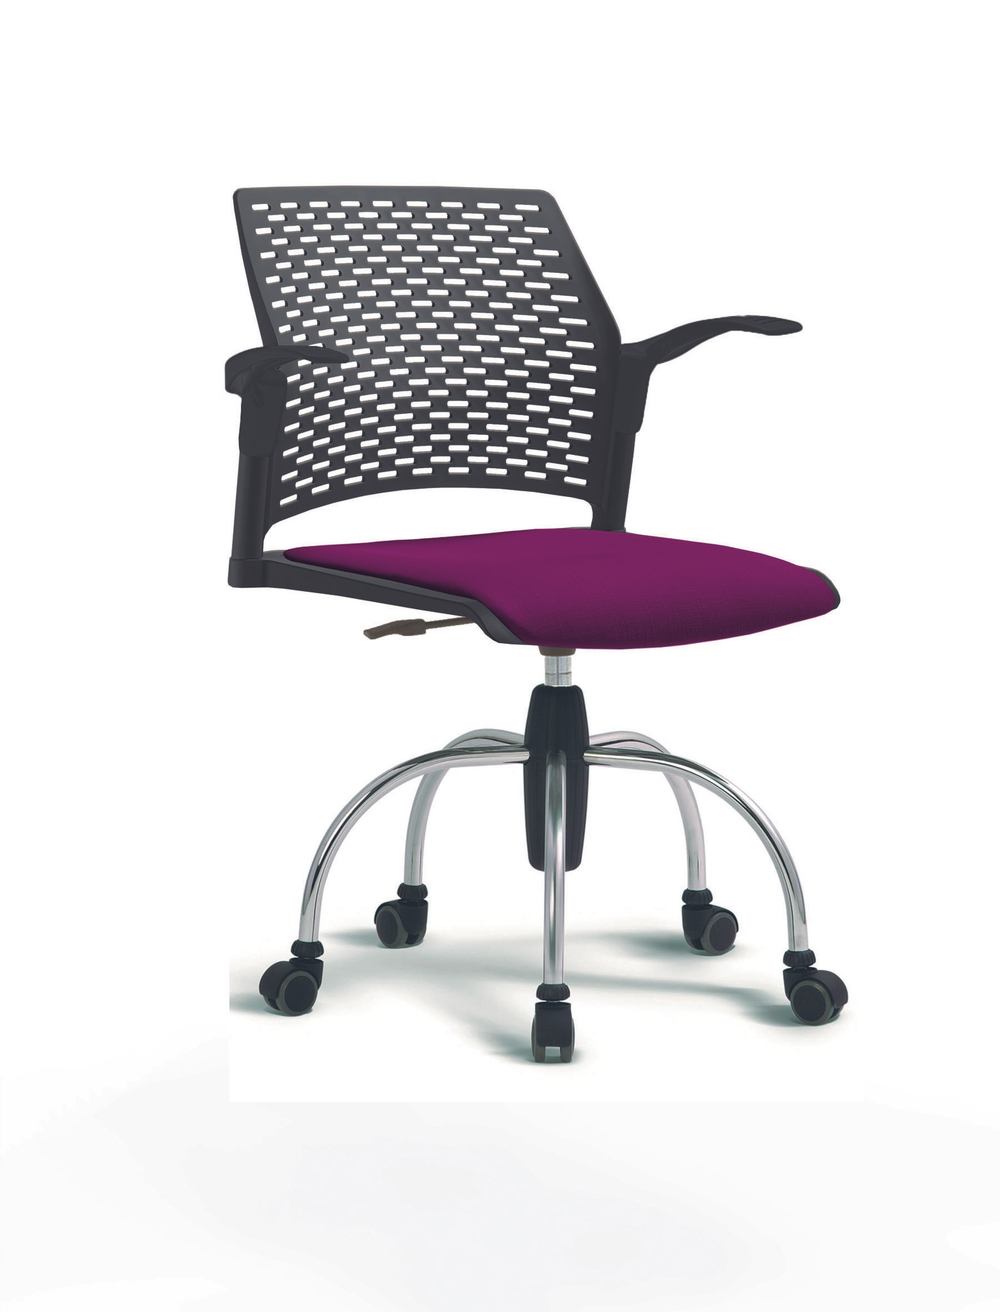 Кресло Rewind каркас хромированный, пластик черный, база паук хромированная, с открытыми подлокотниками, сиденье фиолетовое